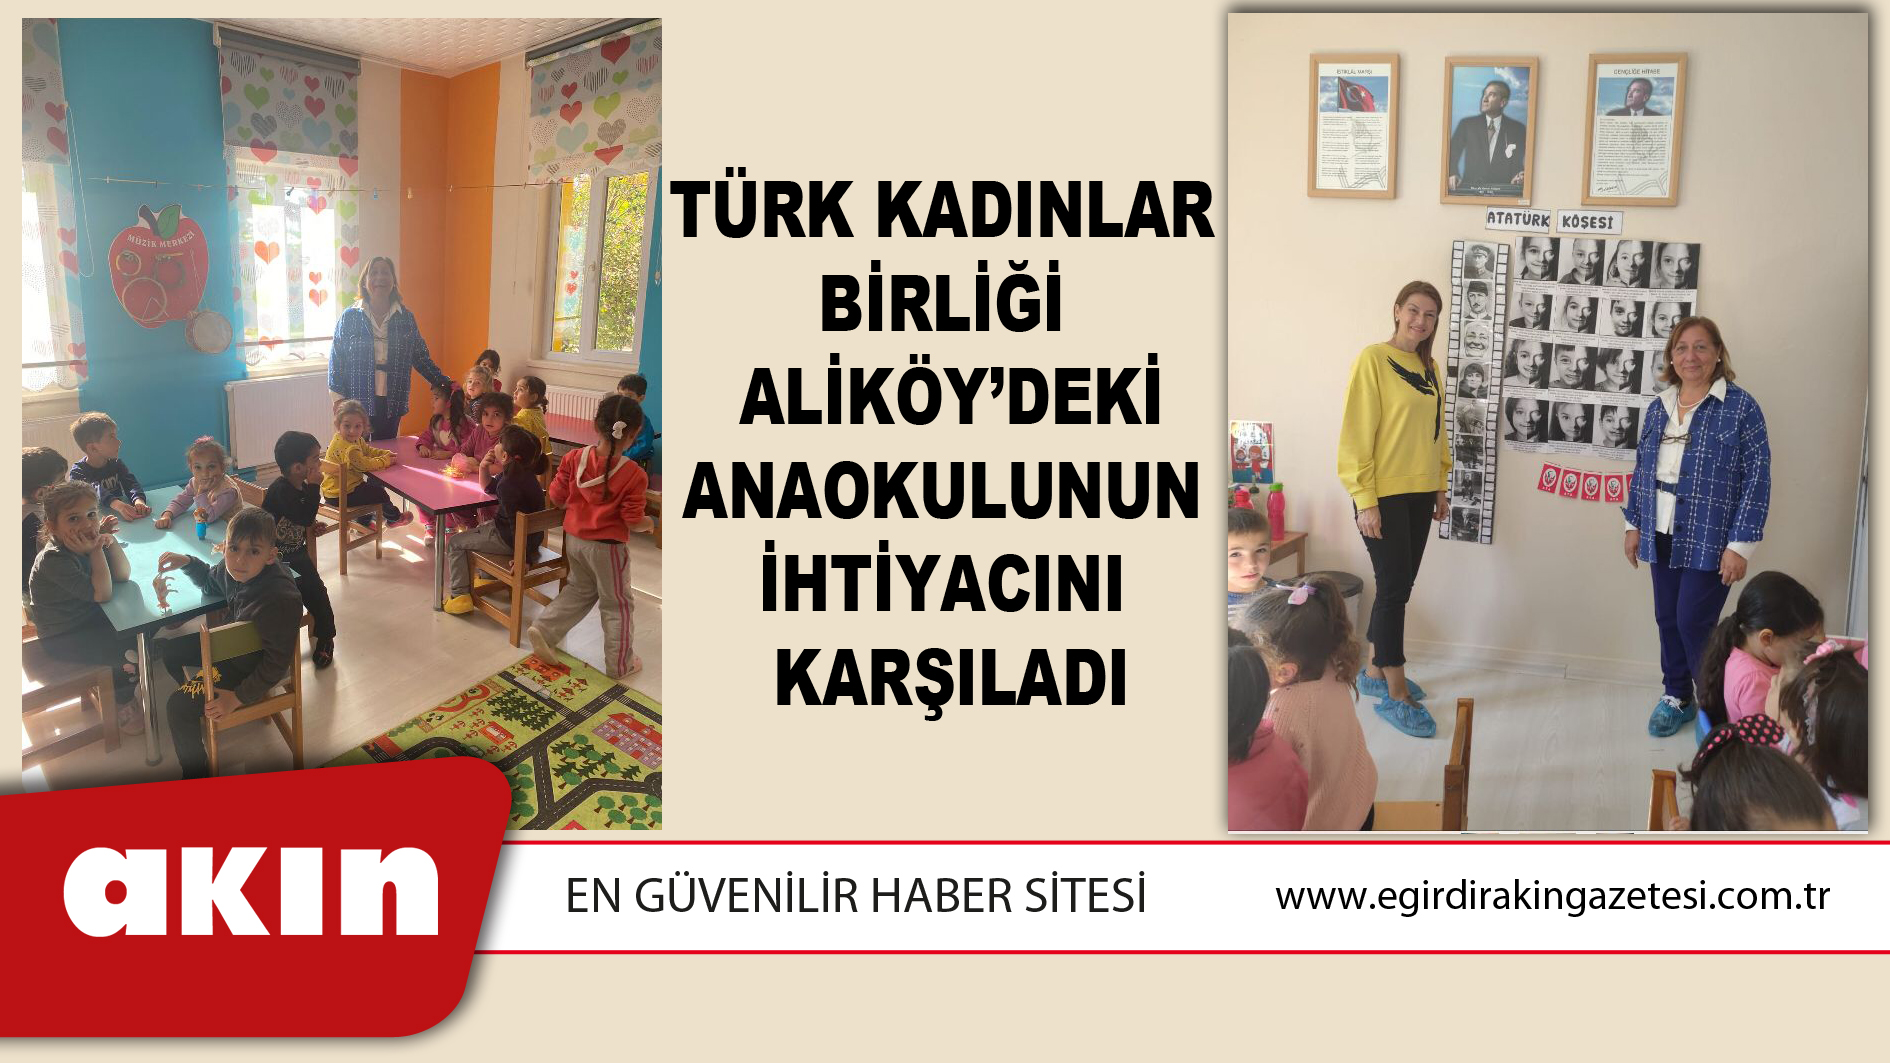 Türk Kadınlar Birliği Aliköy’deki Anaokulunun İhtiyacını Karşıladı